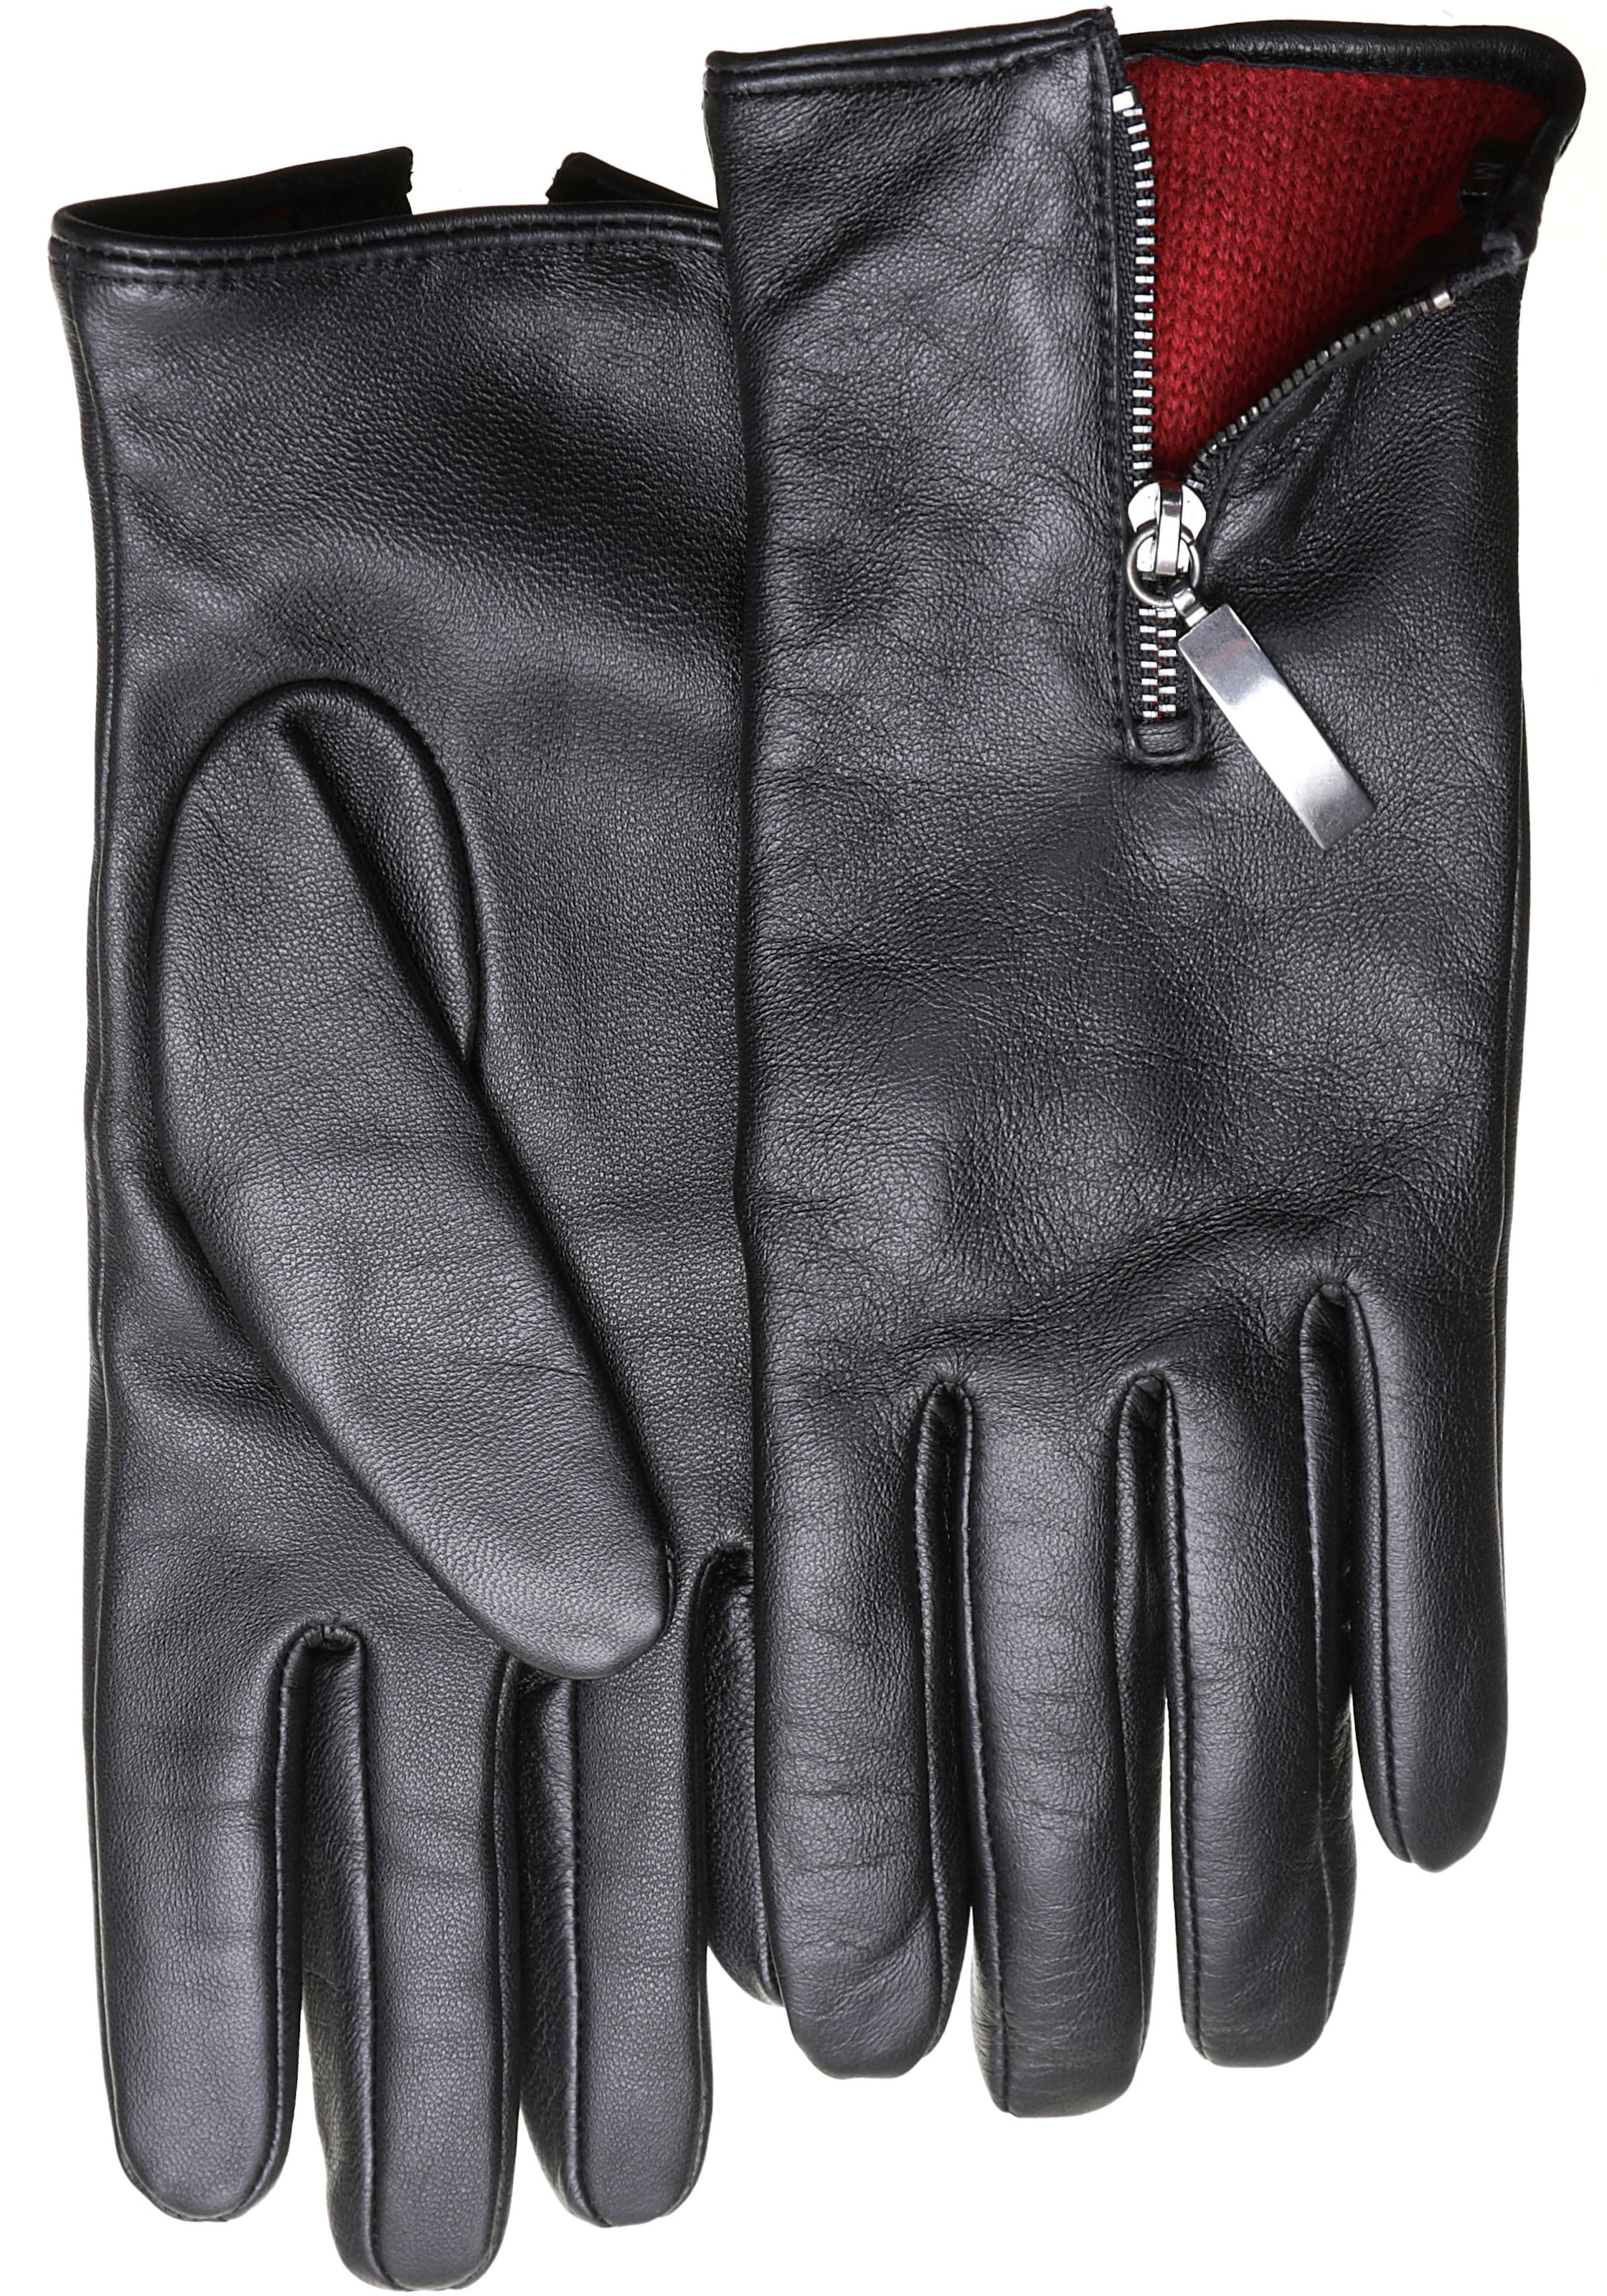 PEARLWOOD Lederhandschuhe Zipper mit dem Innenfutter Handrücken auf »Helena« farbigem Glattleder